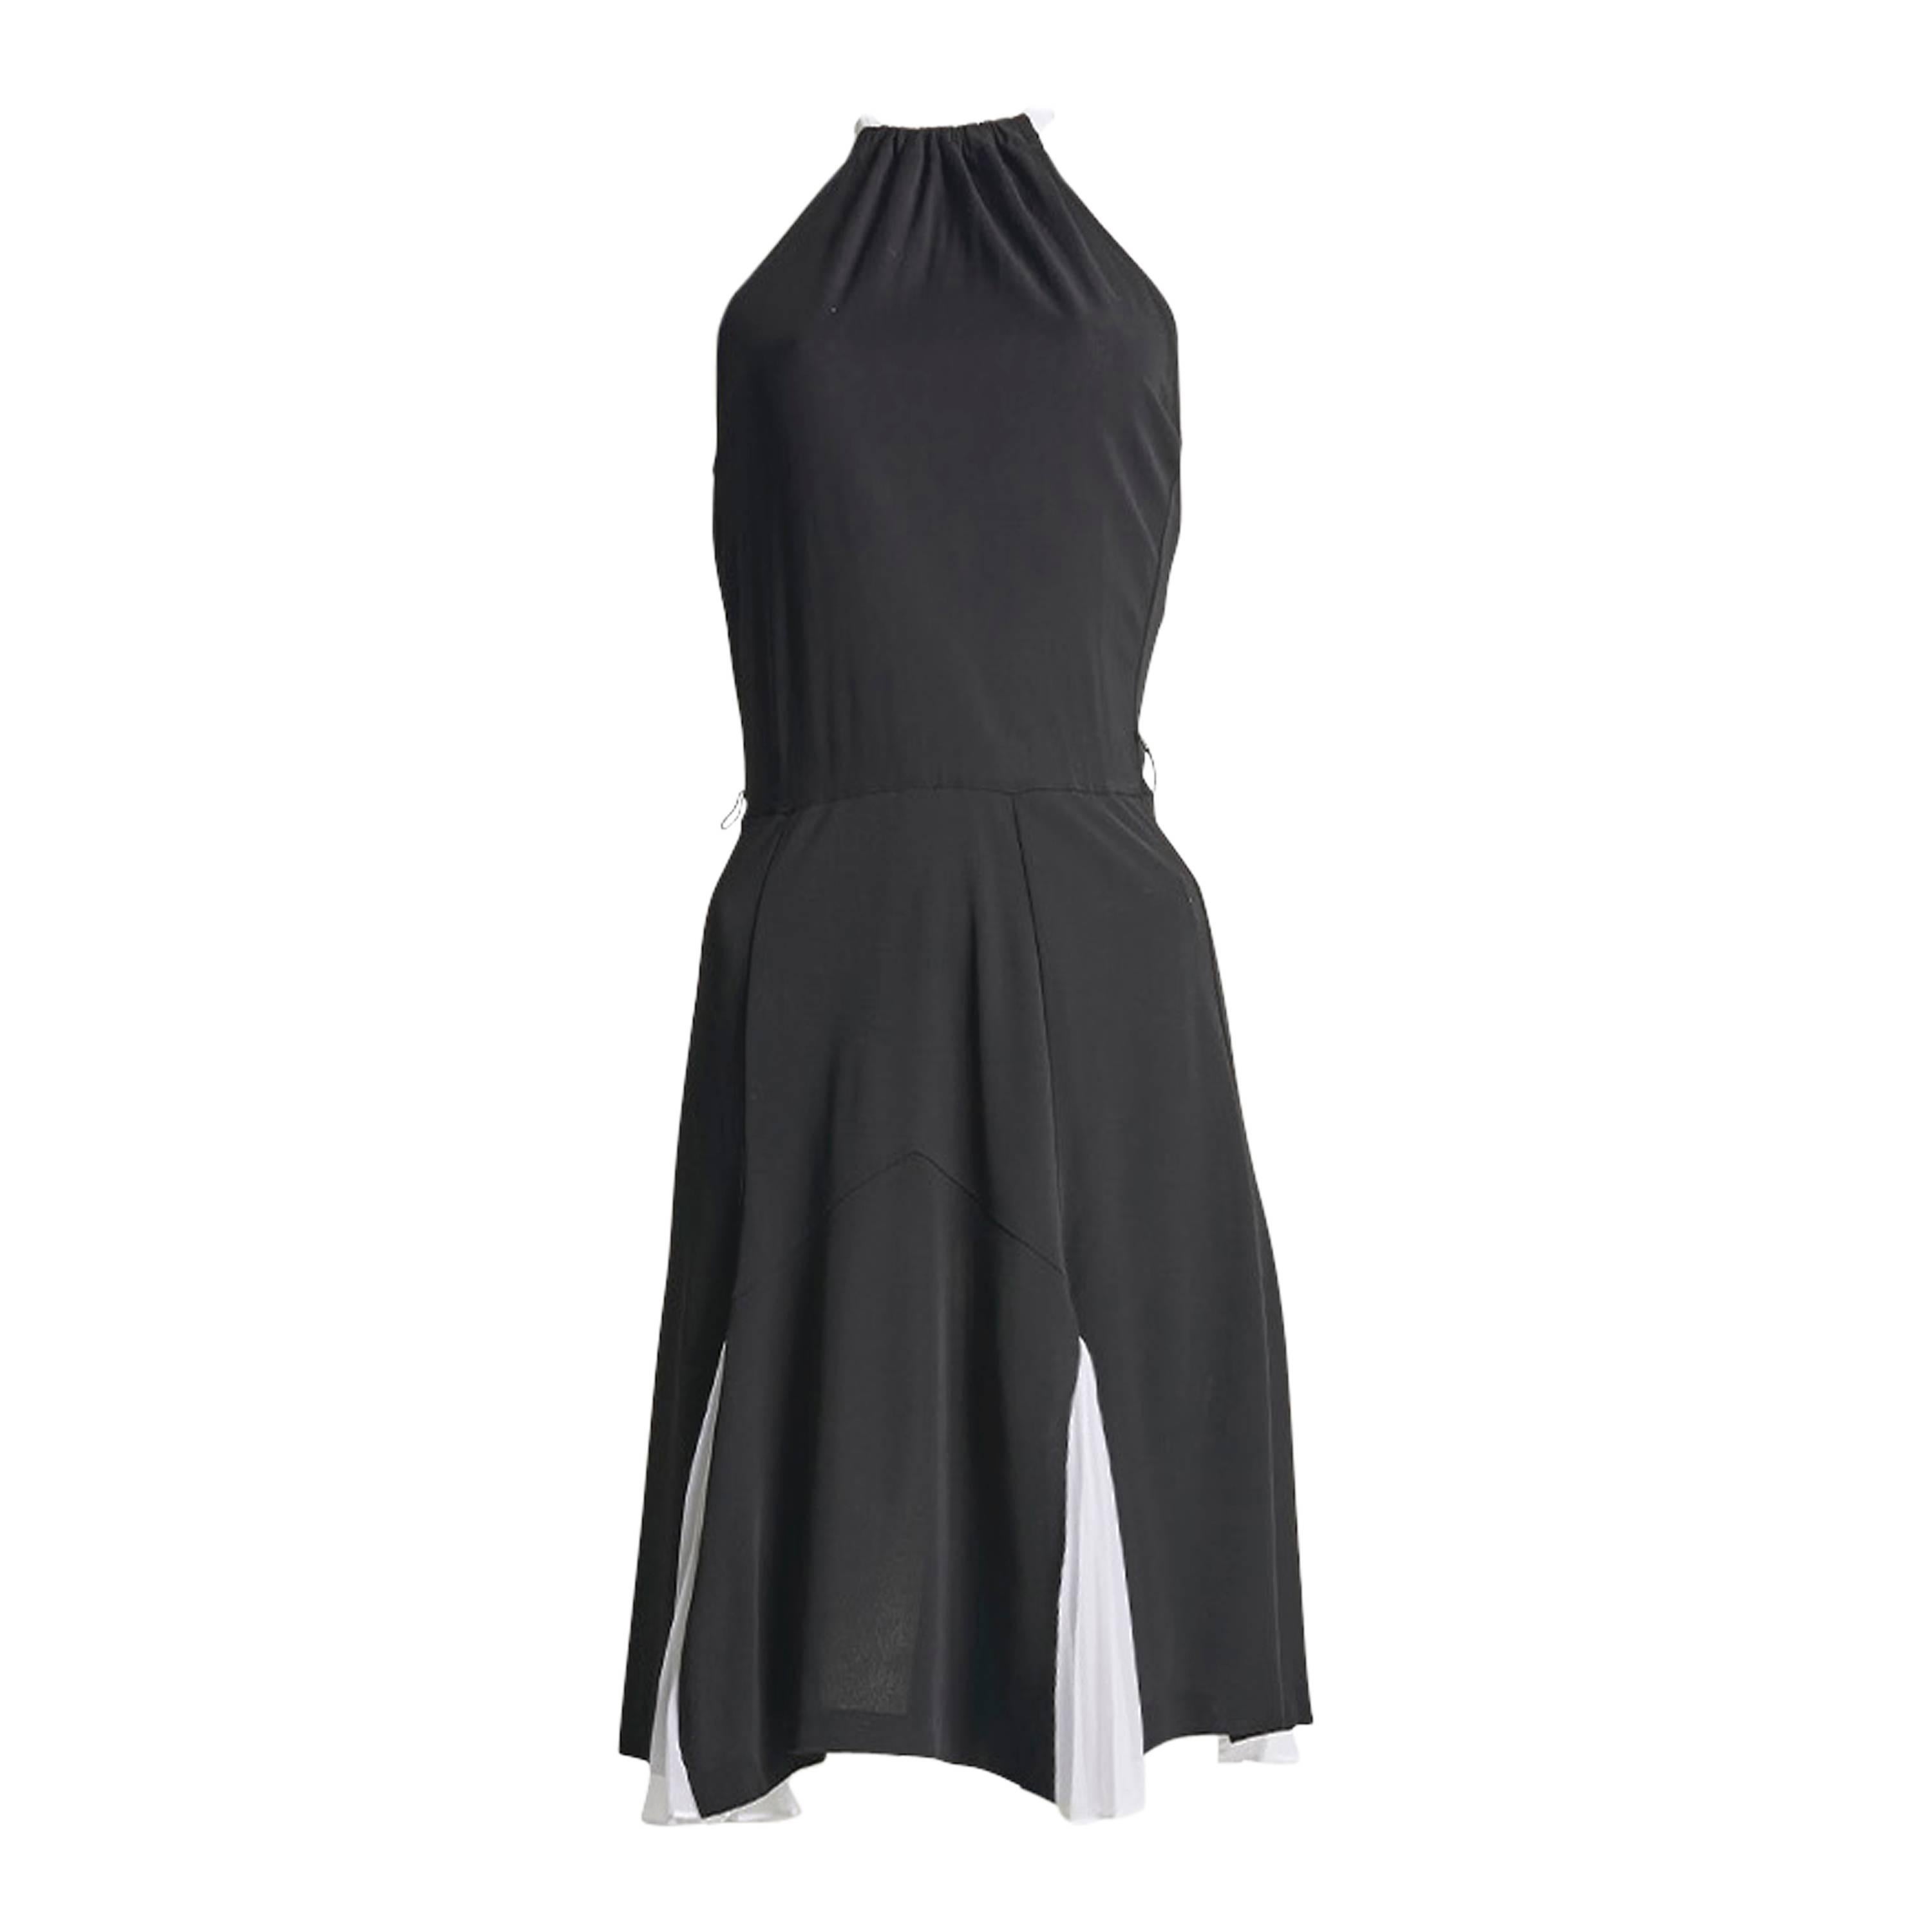  Diane Von Furstenberg Black and White Halter Neck Dress  For Sale